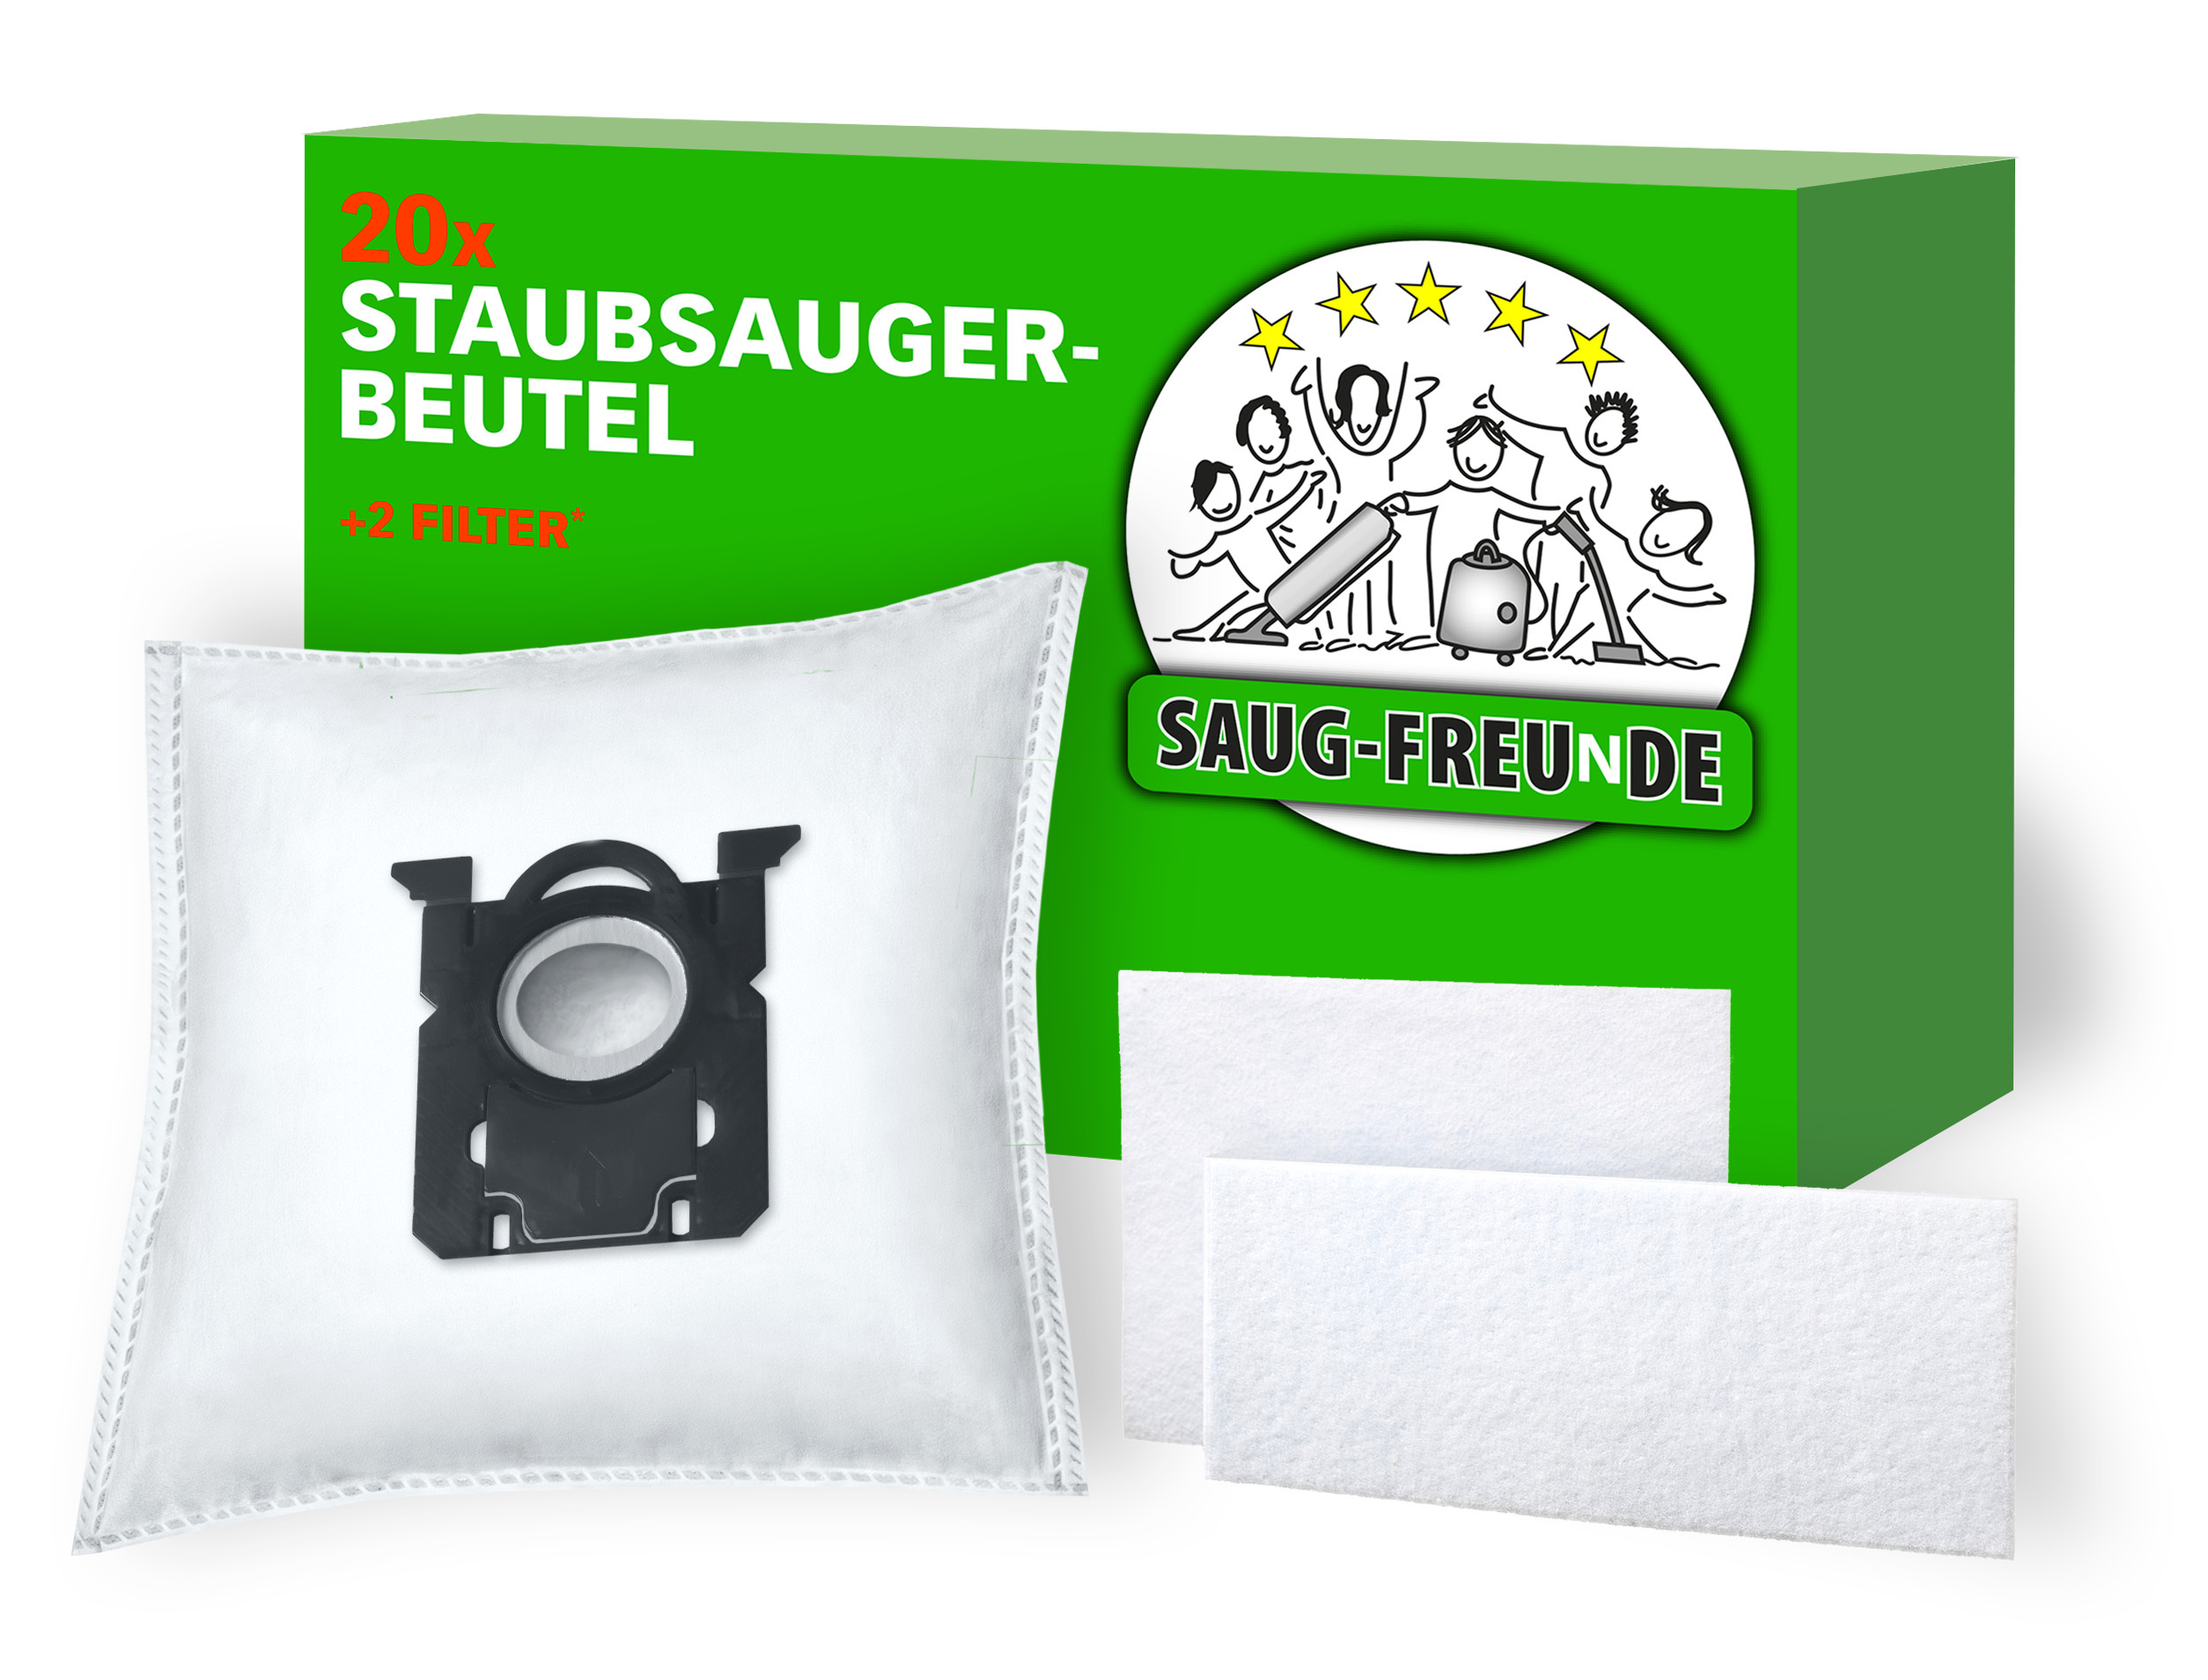 SAUG-FREUNDE 10x Staubsauger-Beutel